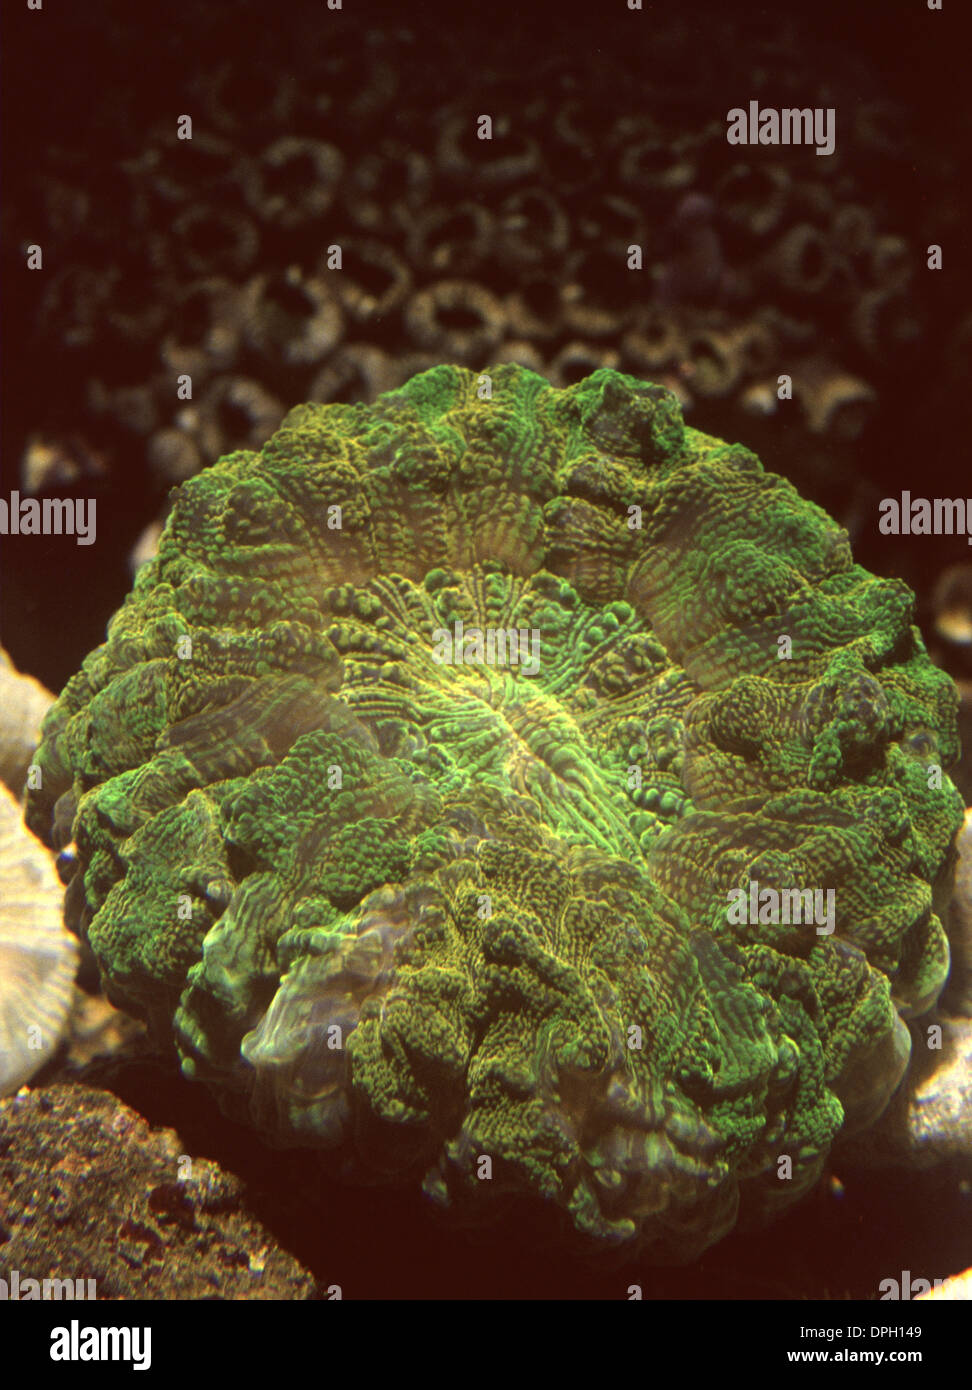 Doughnut coral (Scolymia vitiensis) Stock Photo